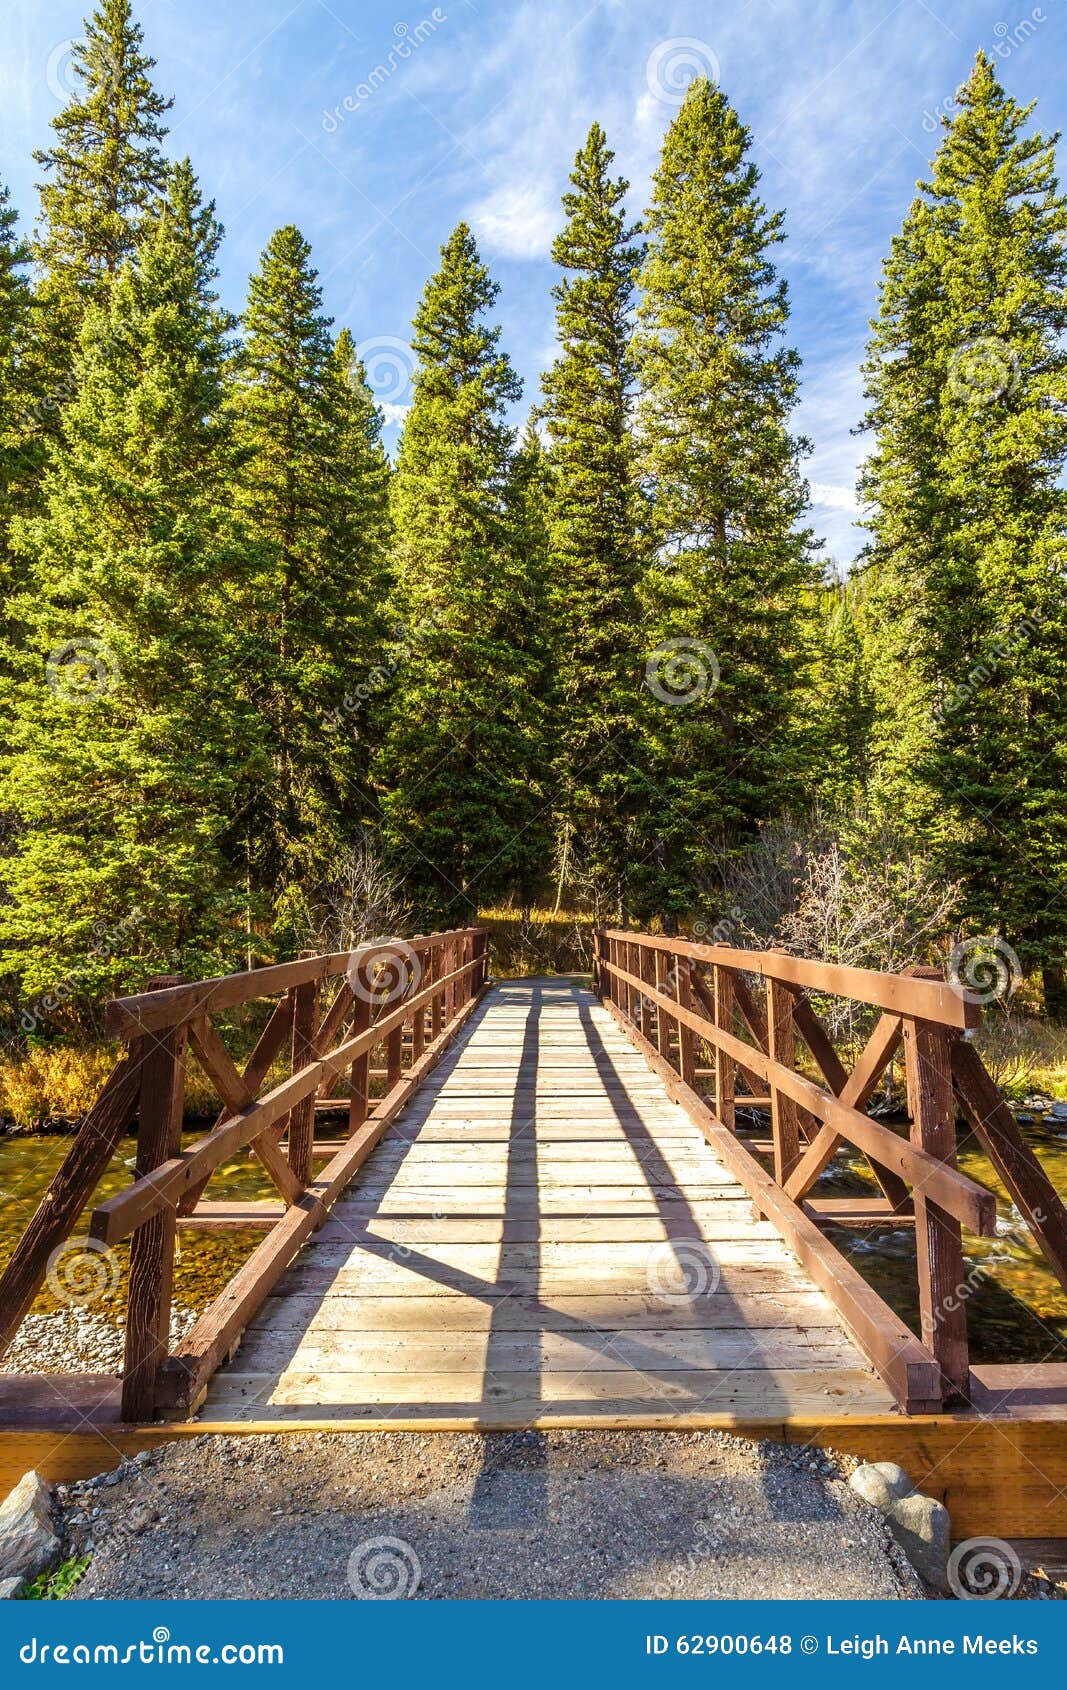 hyalite creek bridge